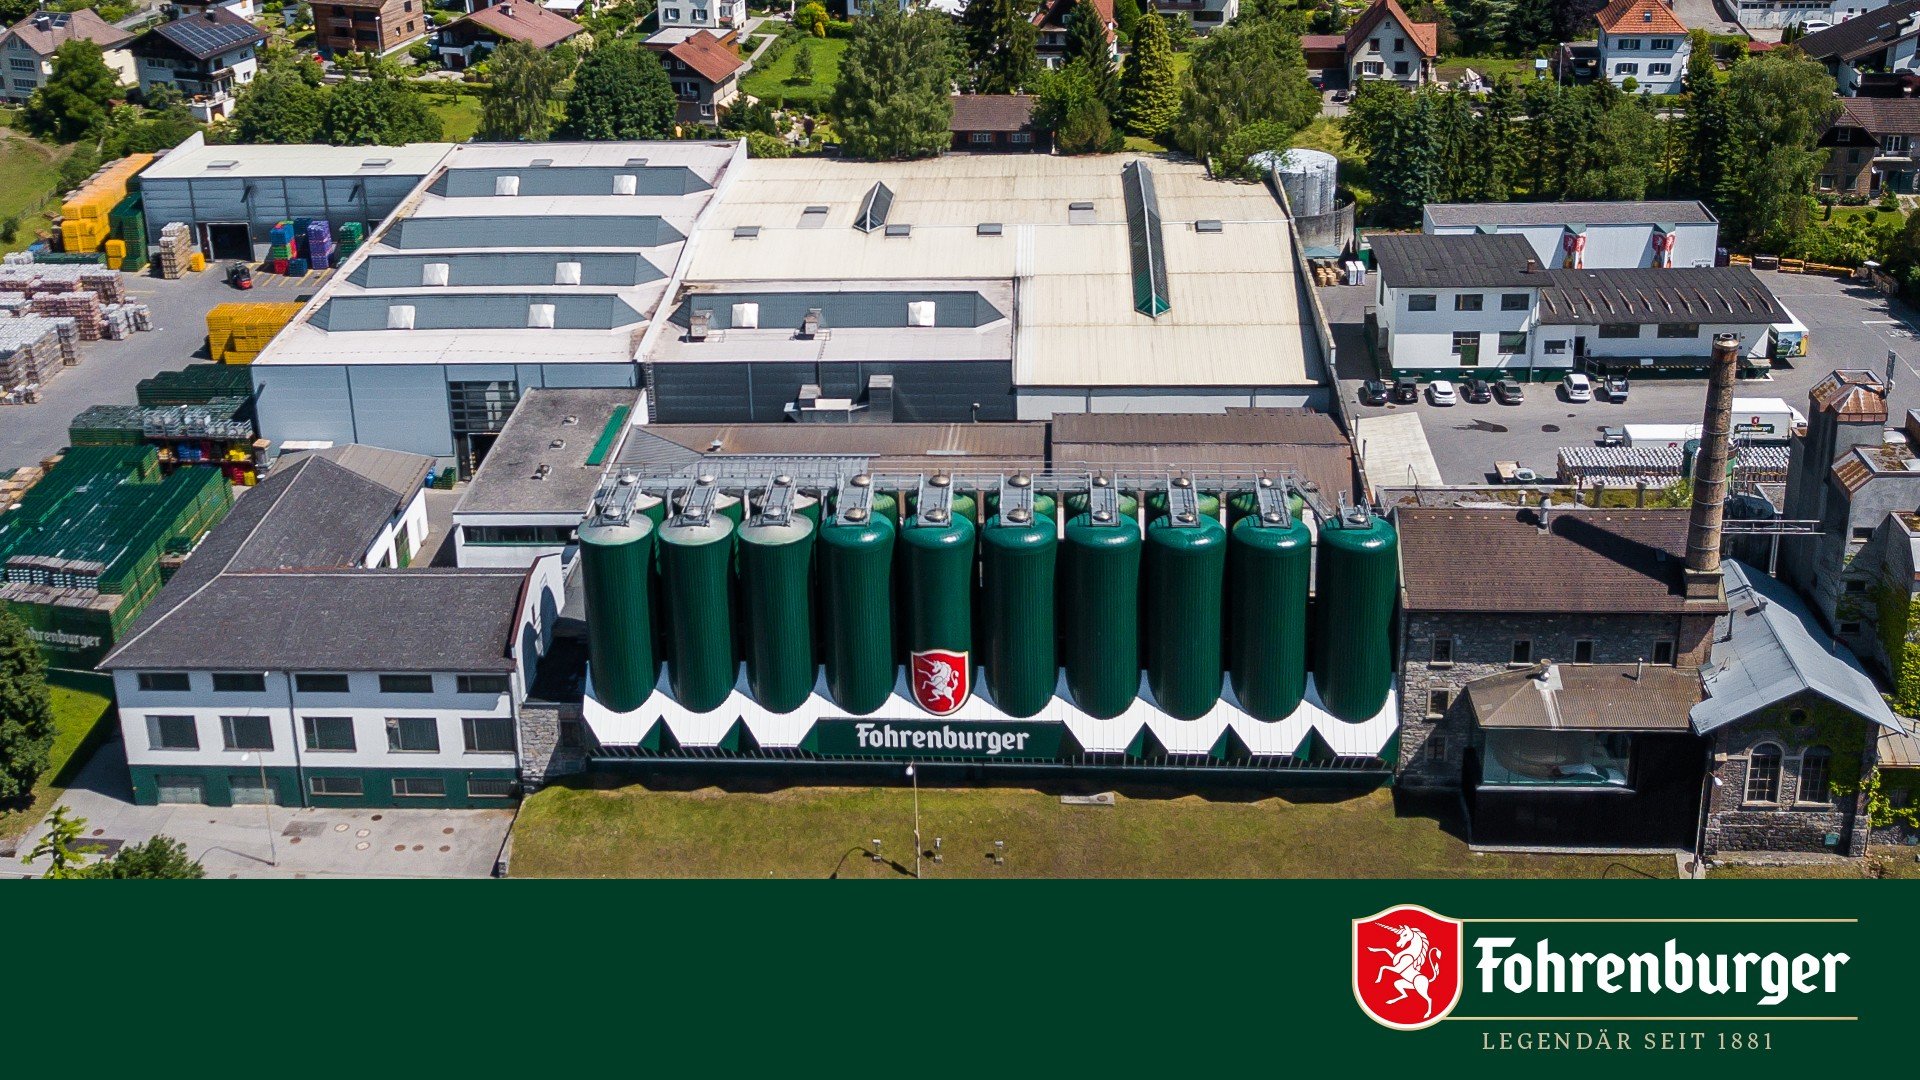 Brauerei Fohrenburg brewery from Austria